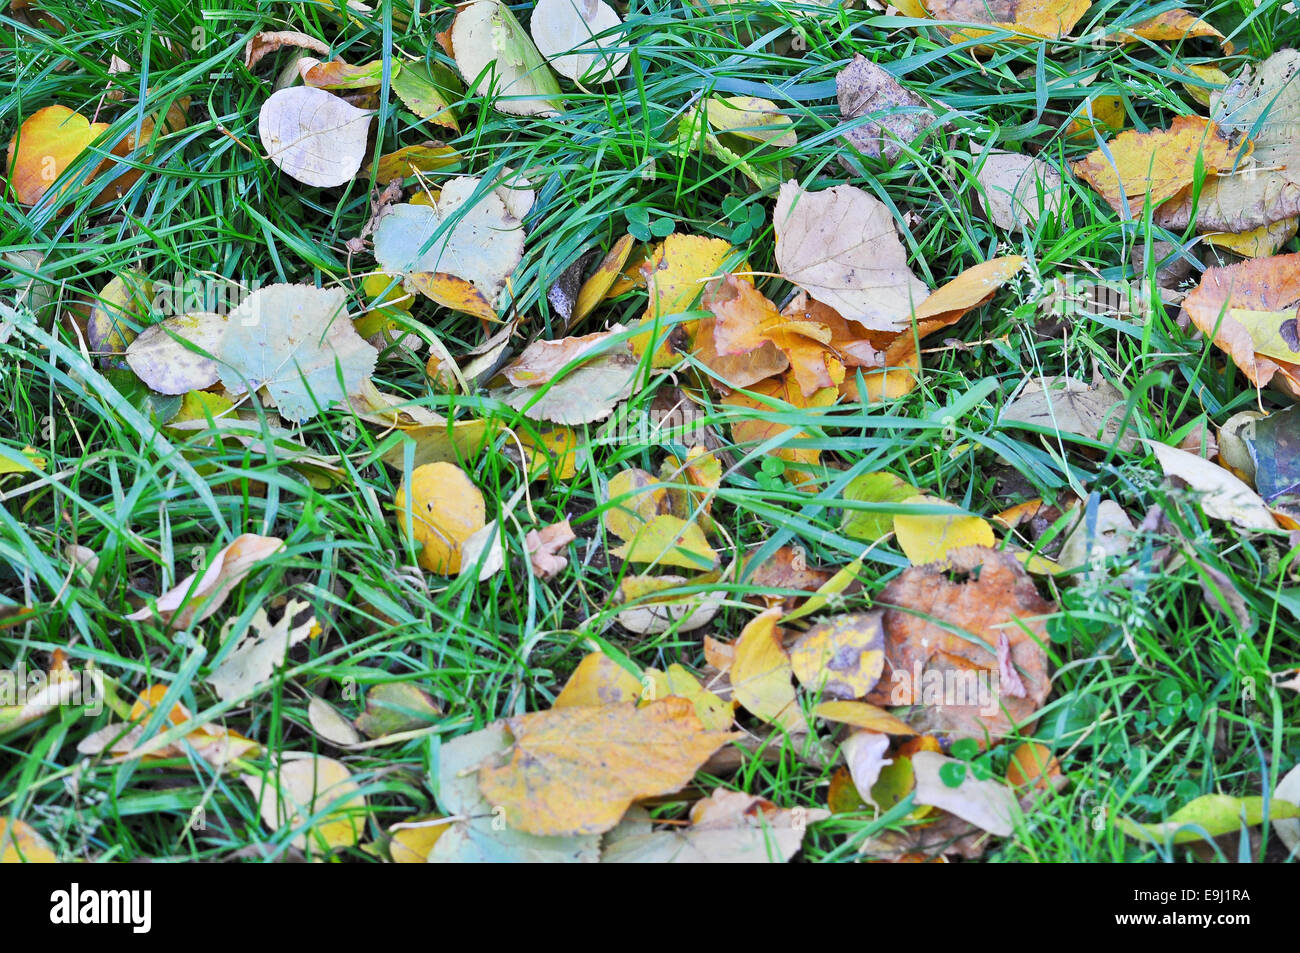 Feuilles mortes. Un tapis de feuilles colorées en octobre, allongés sur l'herbe. Banque D'Images